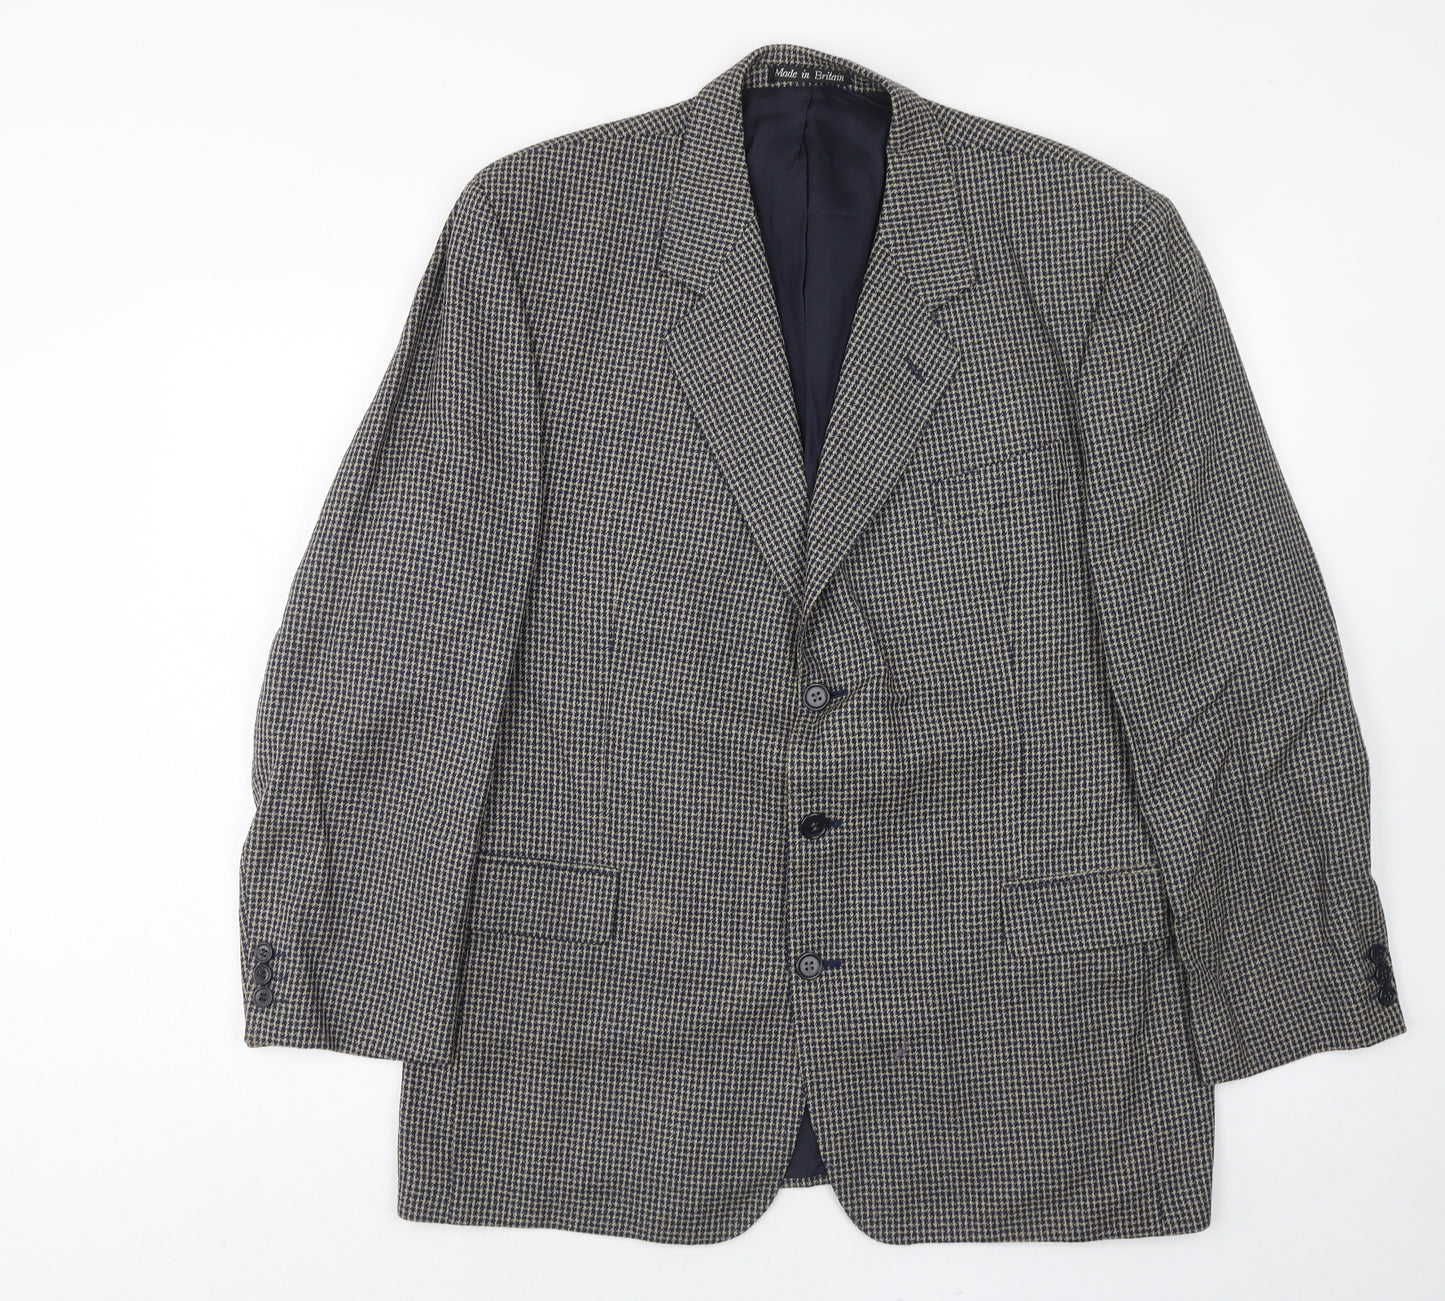 Brook Taverner Mens Blue Wool Jacket Suit Jacket Size 44 Regular